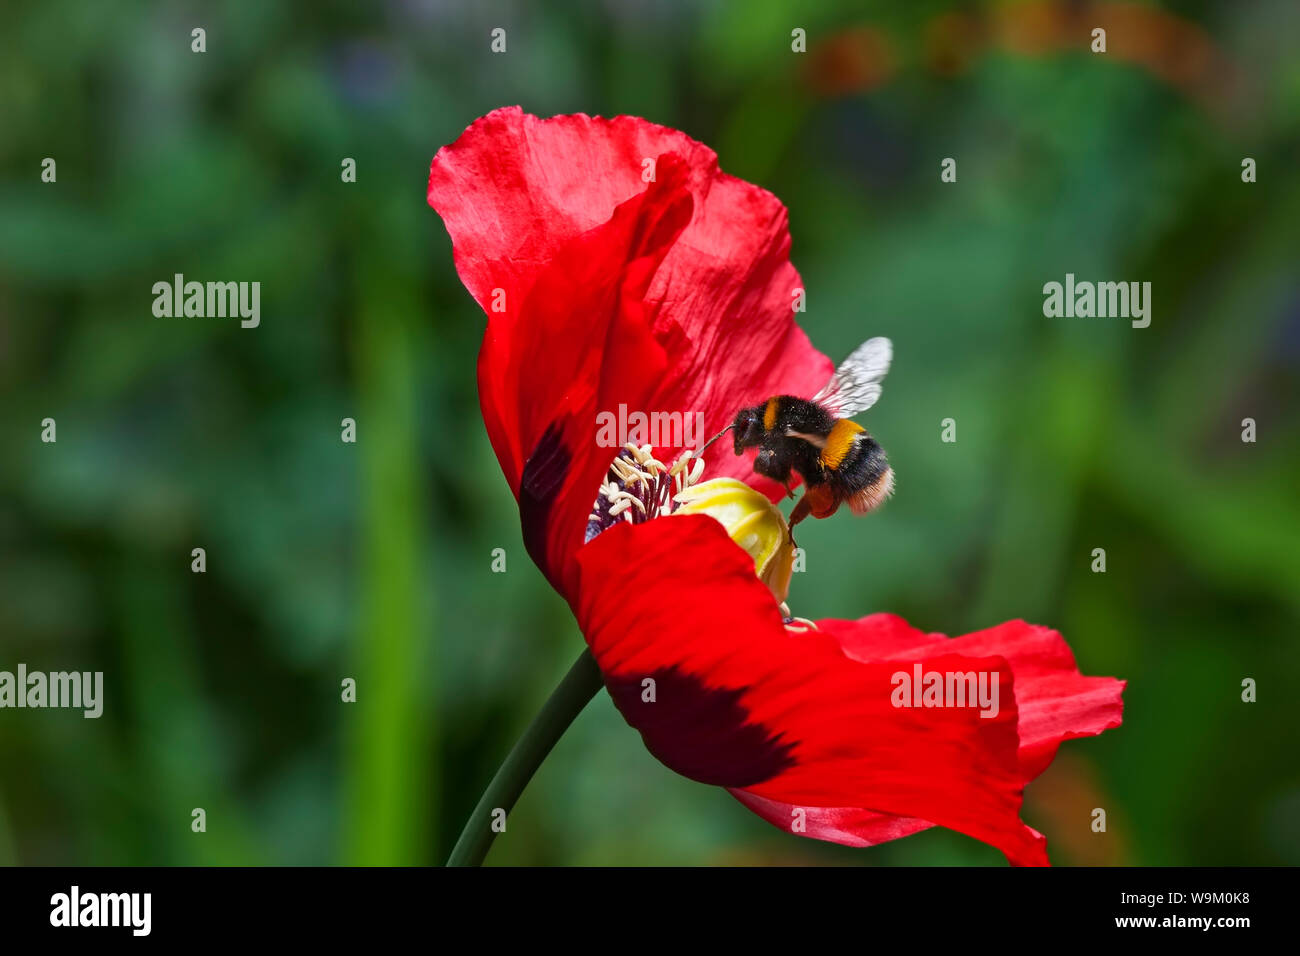 Vuelo de abejorros en una flor de adormidera Foto de stock